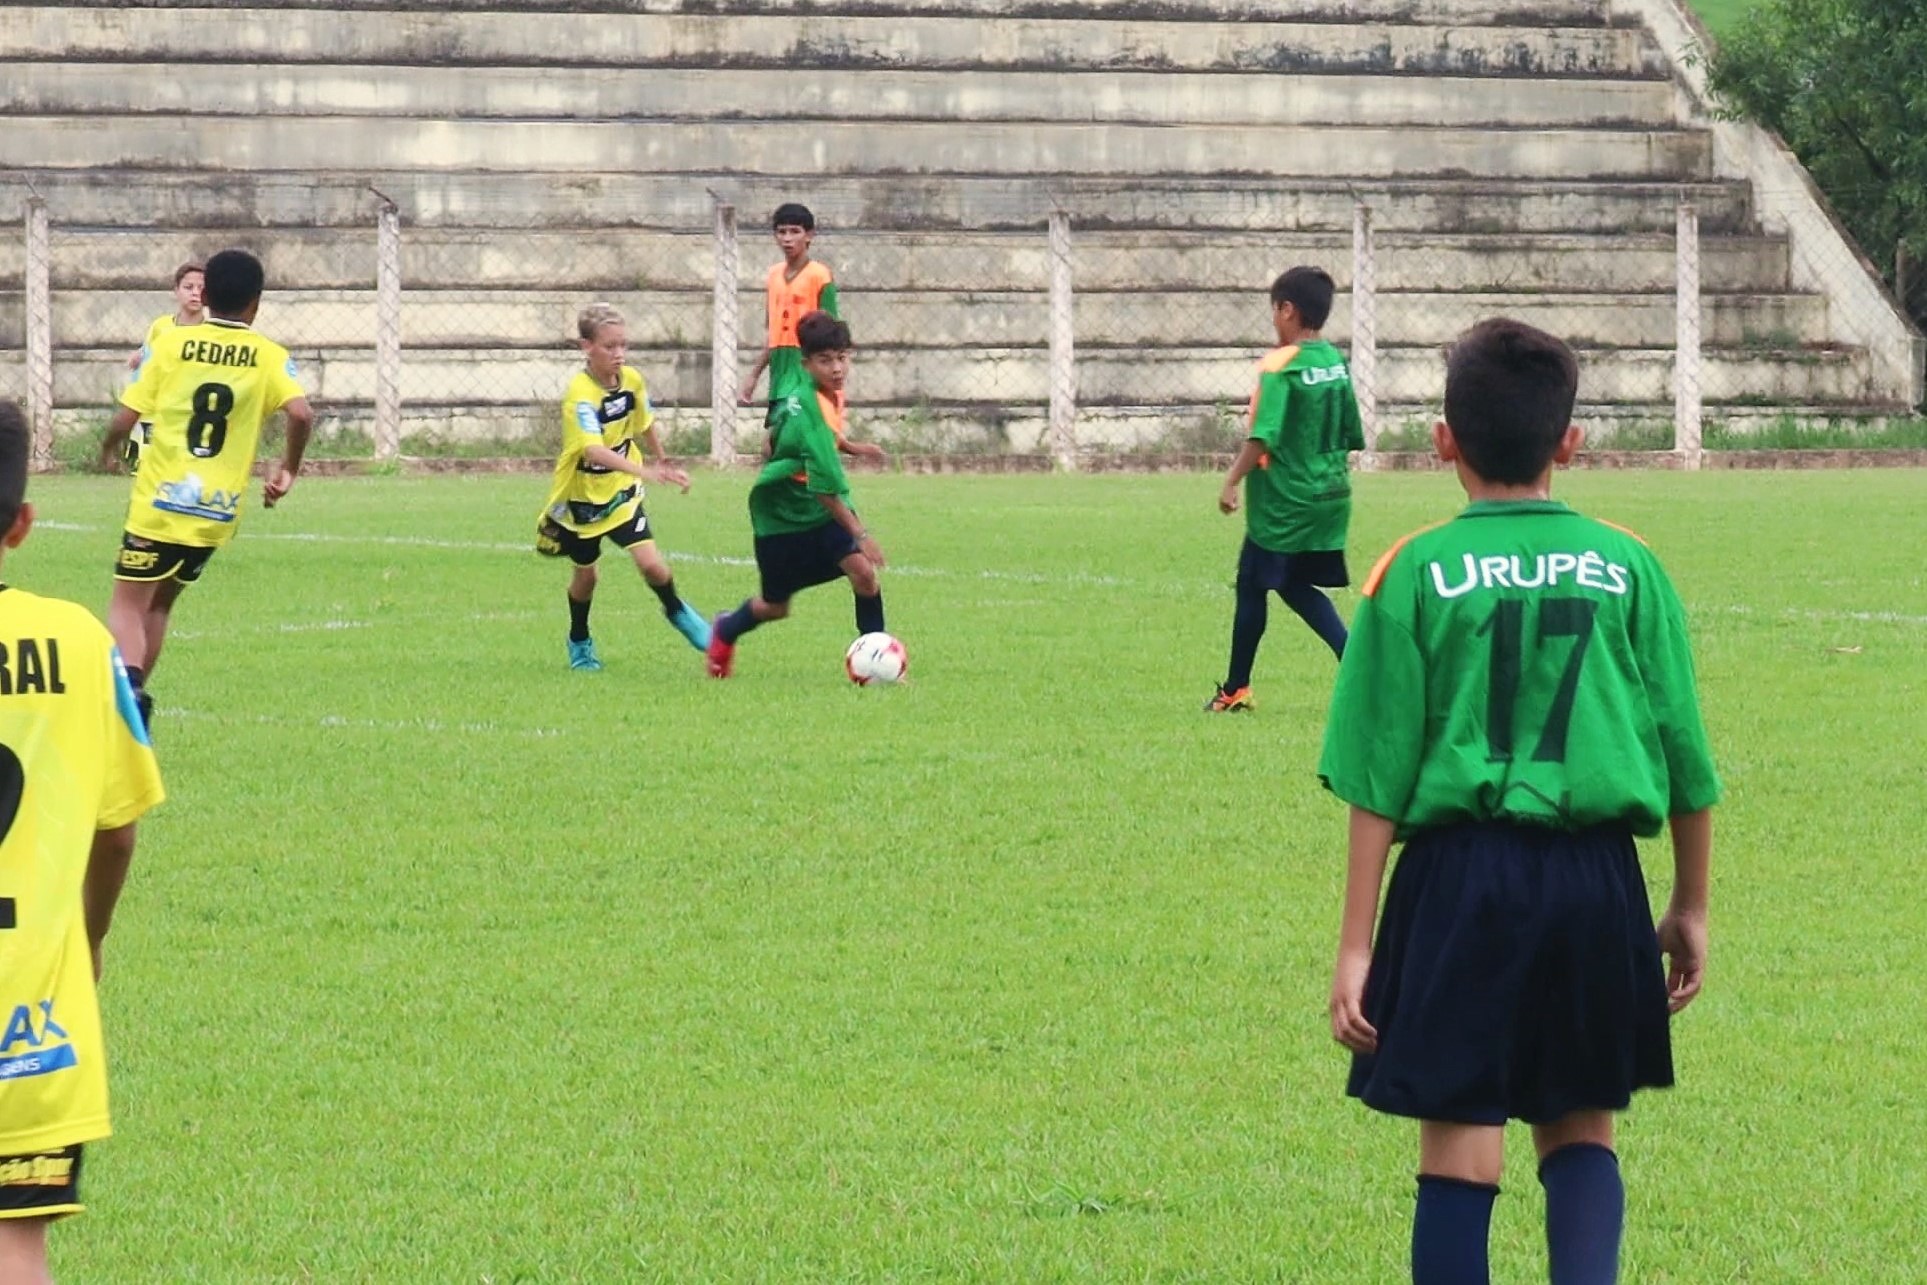 Partida de futebol disputada por alunos da Escolinha de Esportes. Foto: Luís Fernando da Silva / Prefeitura de Urupês